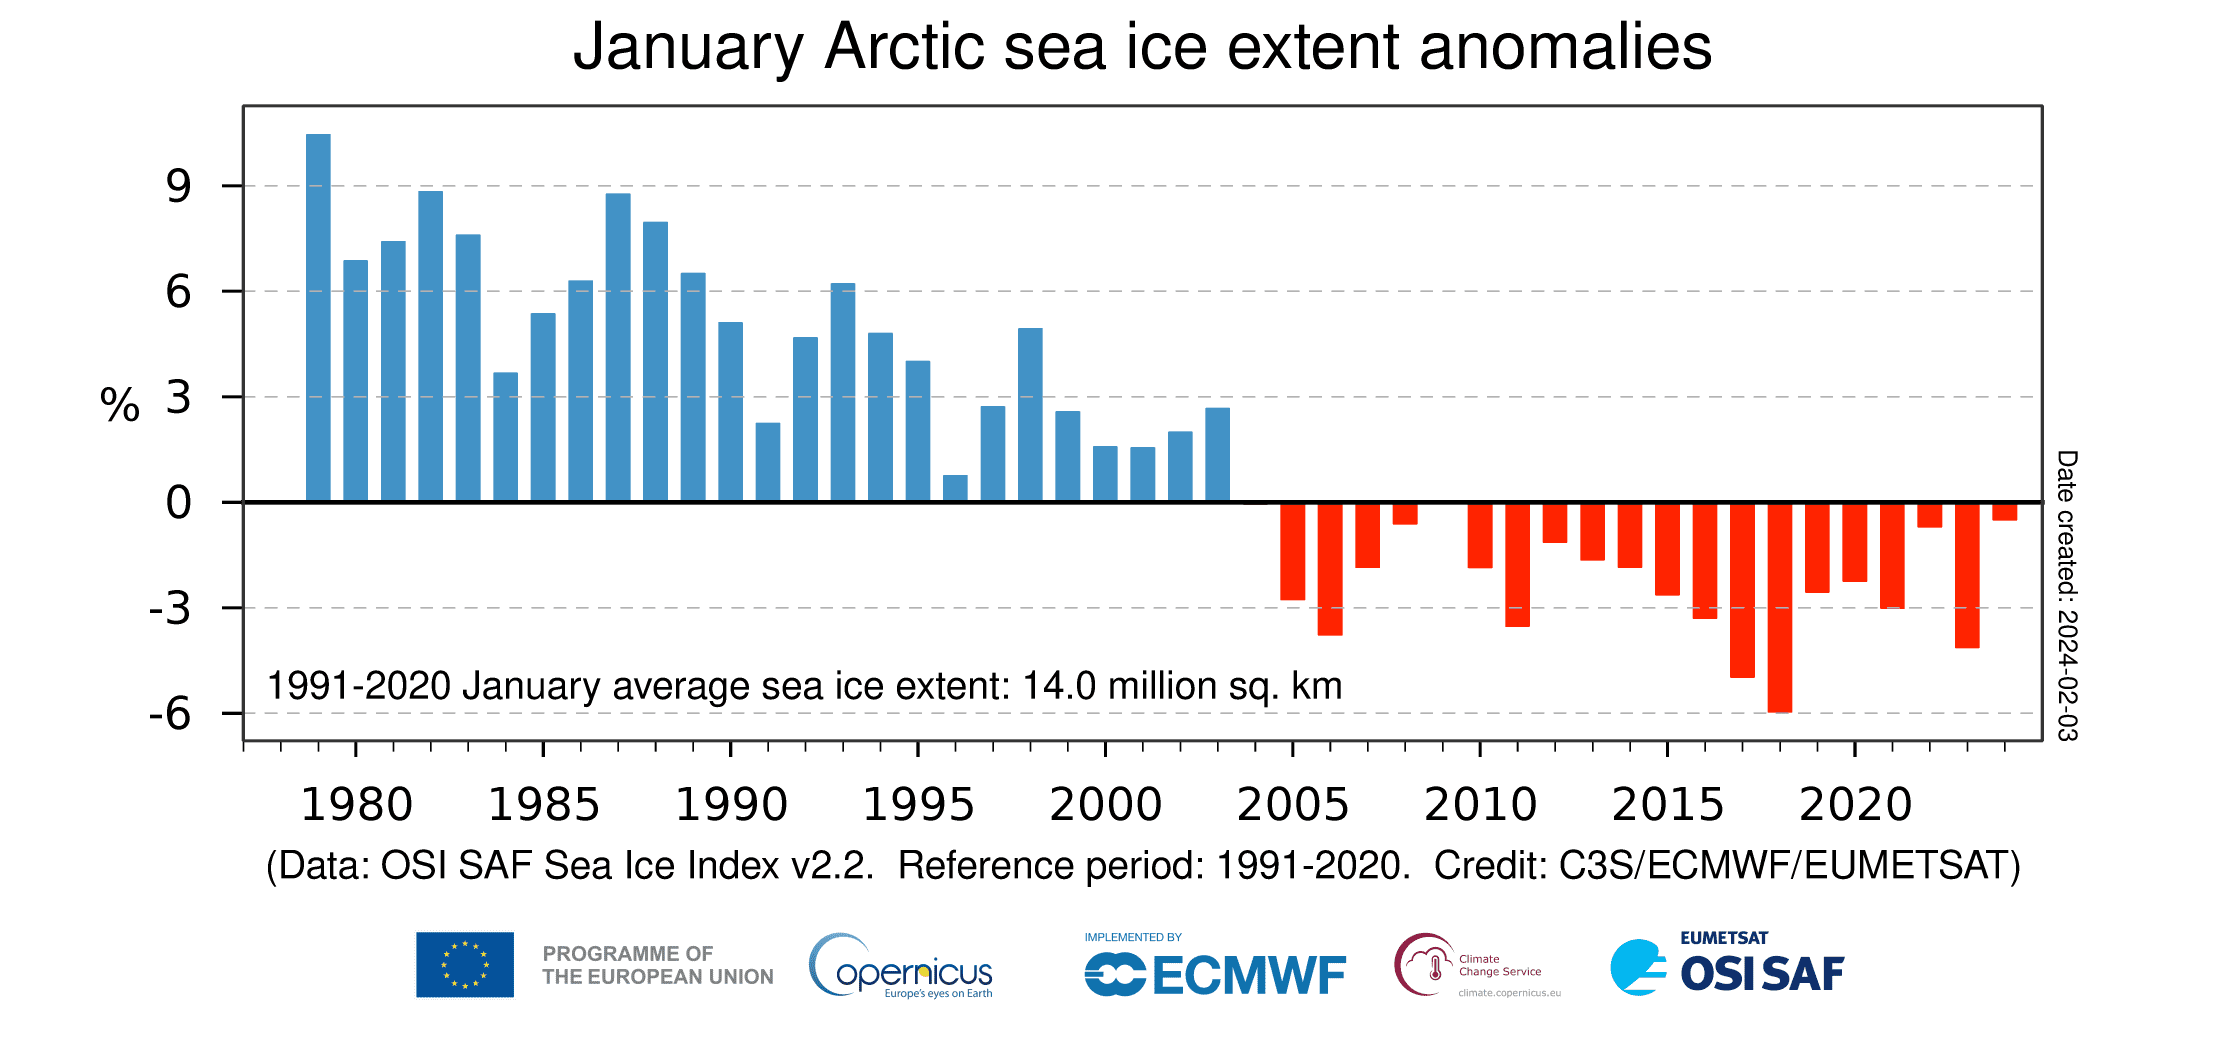 Wykres przedstawiający zasięg lodu w latach 1980-2023 w porównaniu do średniej z lat 1991-2020. Widać, że od 2004 roku zasięg lodu systematycznie jest zmniejsza.